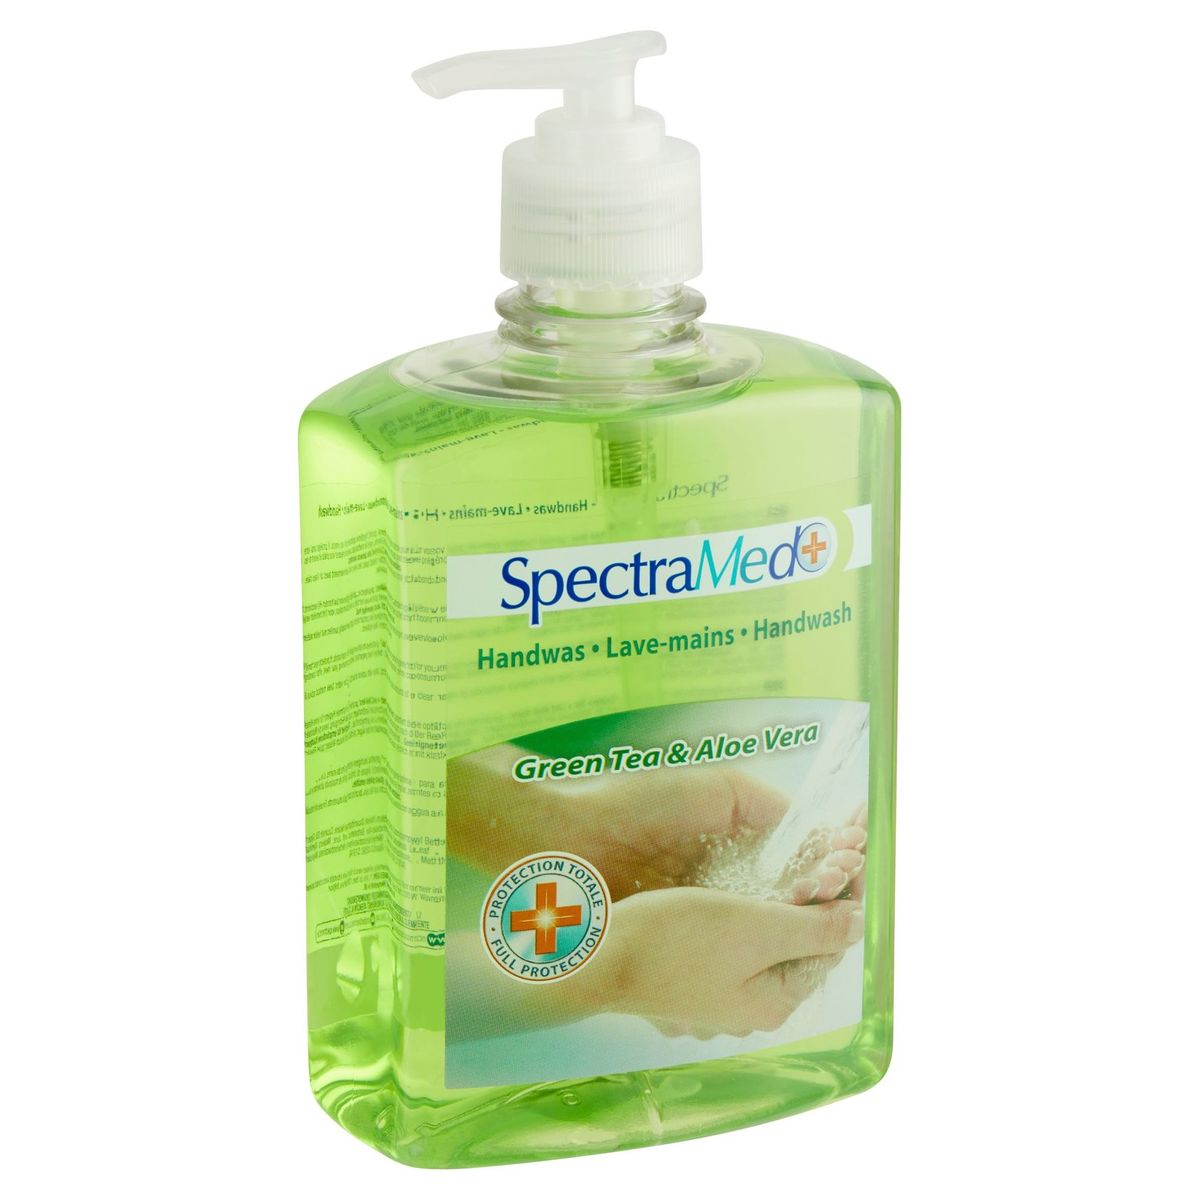 SpectraMed Handwas Antibacterial Green Tea & Aloe Vera 500 ml